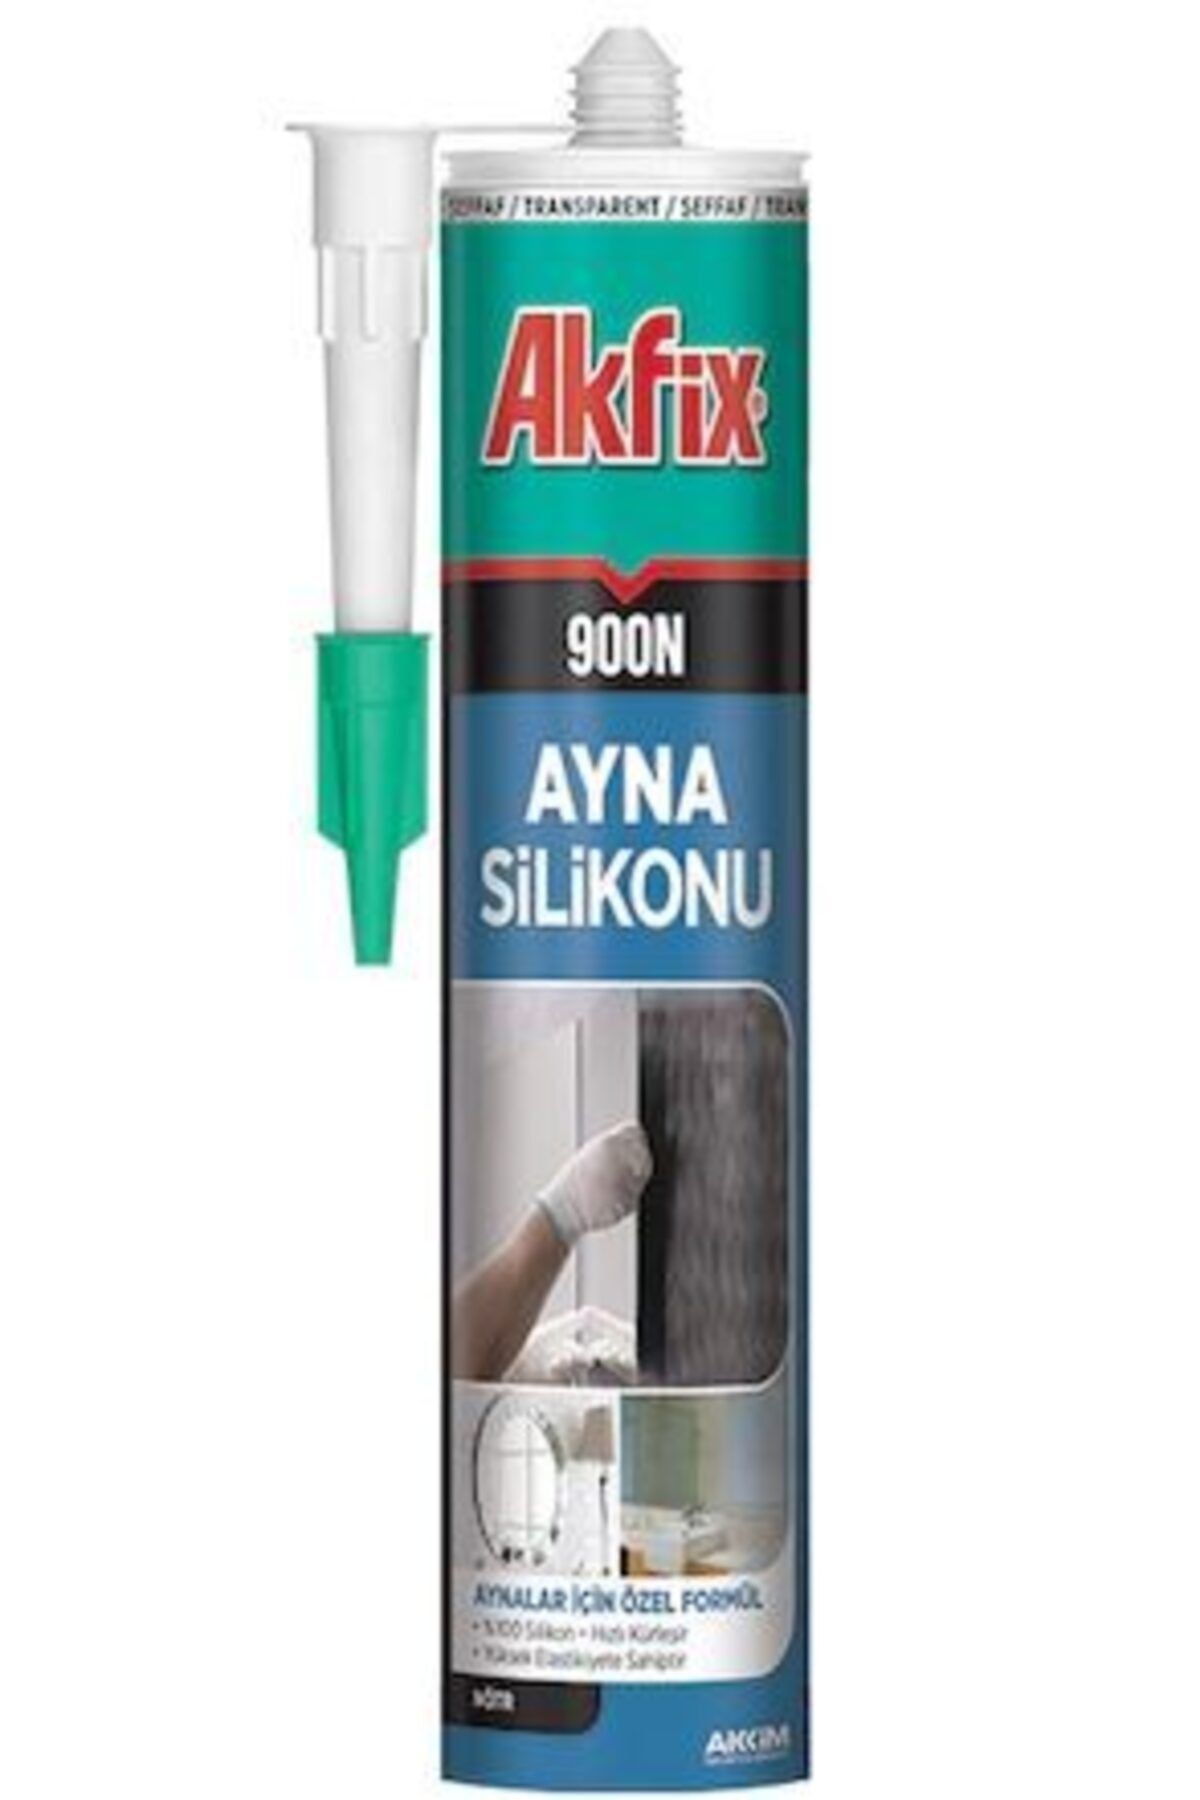 Akfix 900n Nötr Şeffaf Ayna Silikonu 310 ml